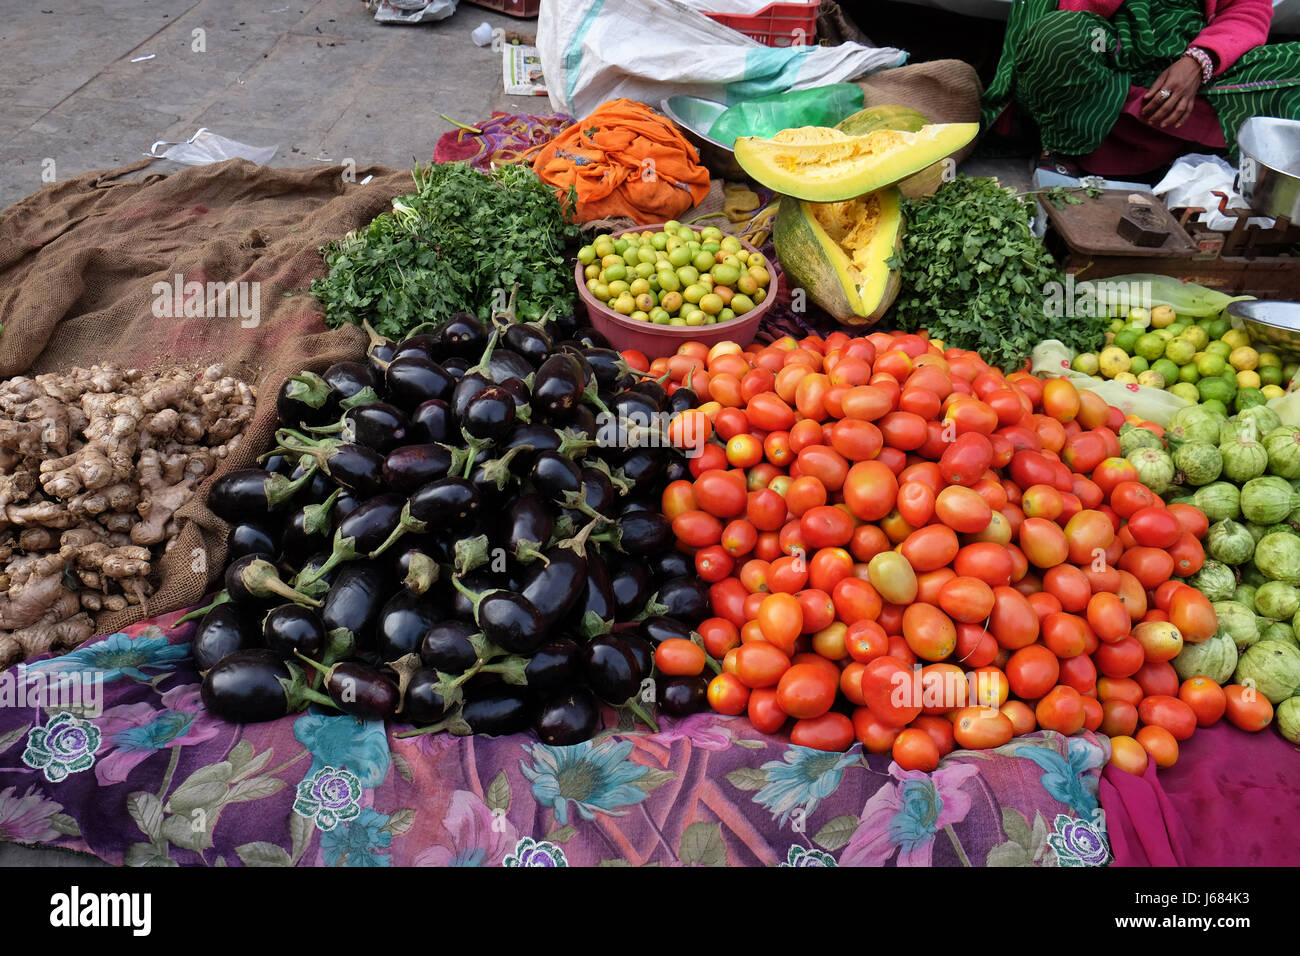 JAIPUR, India - 16 febbraio: la vendita di frutta e verdura dal lato della strada a Jaipur, Rajasthan, India il 16 febbraio 2016. Foto Stock